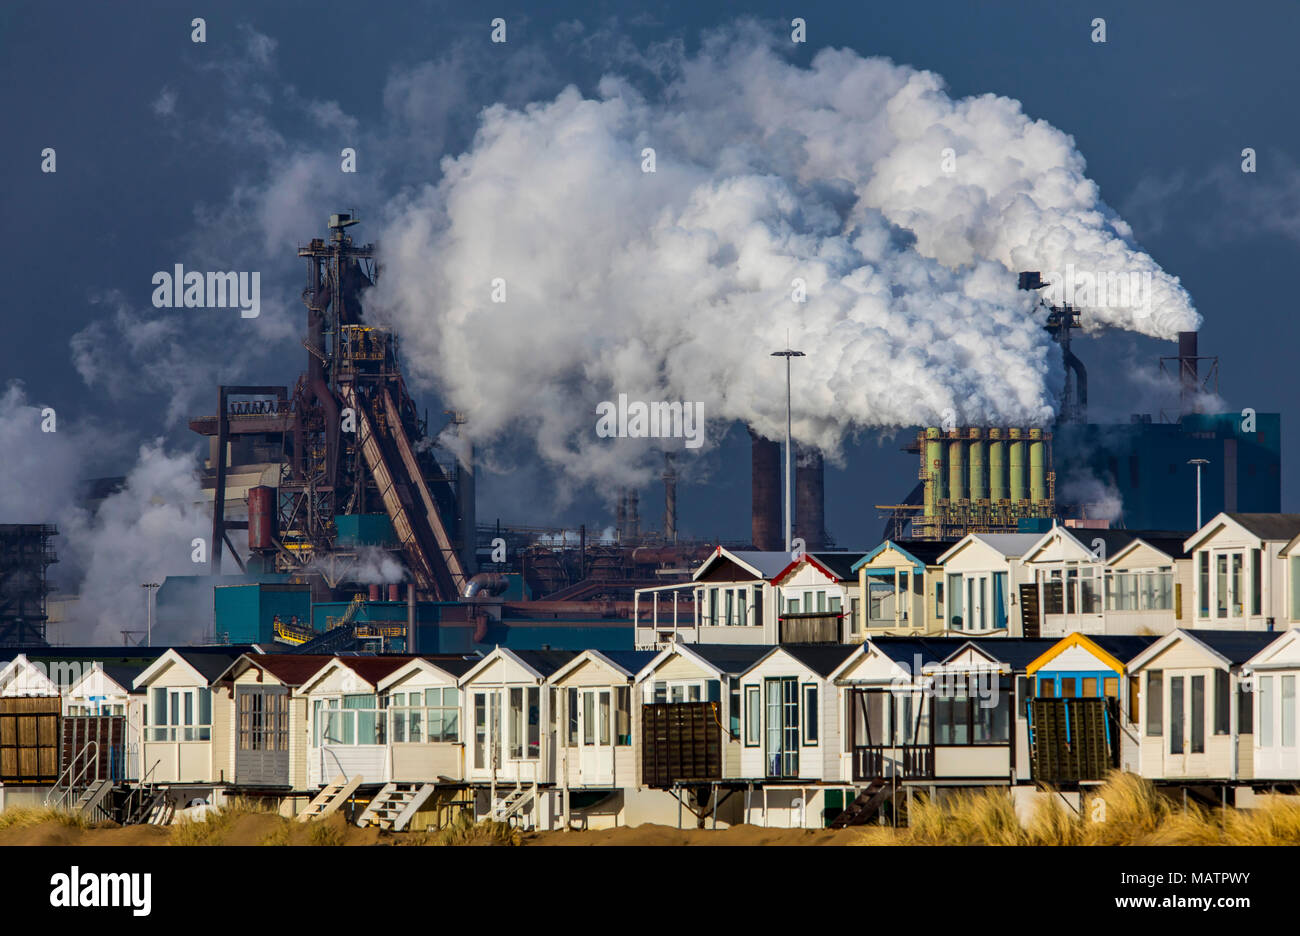 La Tata Steel acciaierie in IJmuiden, Velsen, North Holland, Paesi Bassi, la più grande area industriale nei Paesi Bassi, 2 altiforni, 2 piano di coke Foto Stock